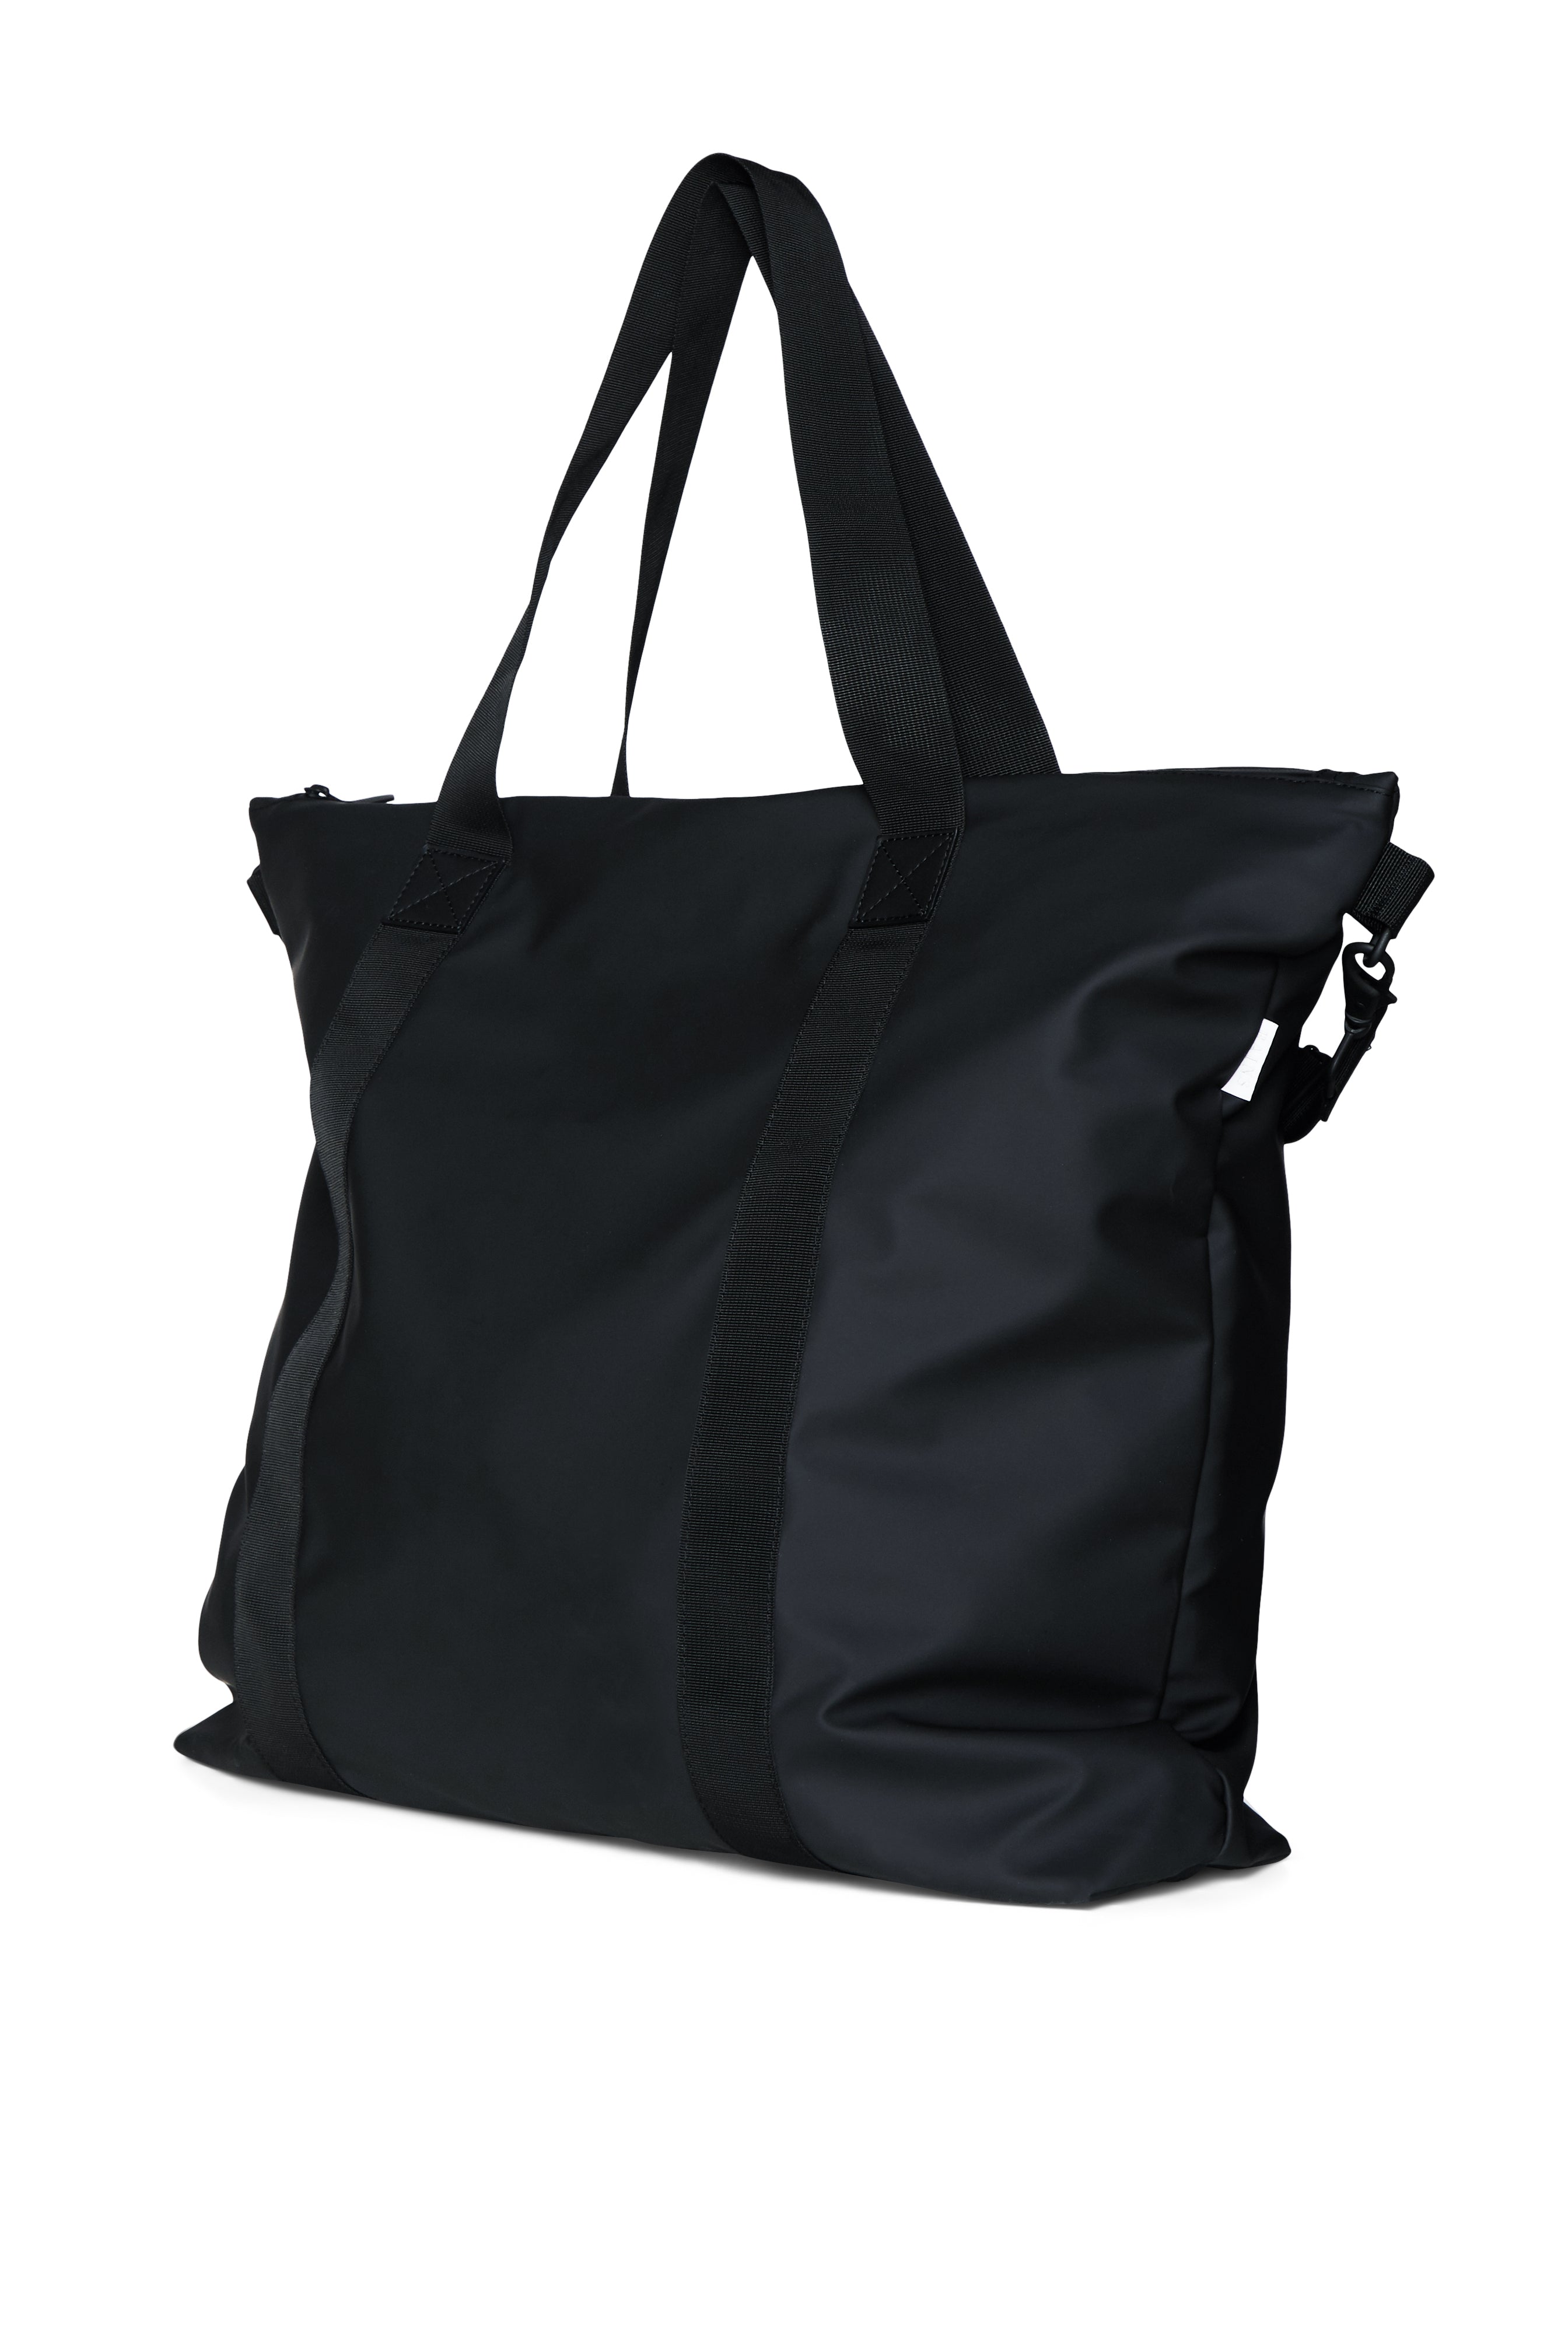 Tote Bag II - Black